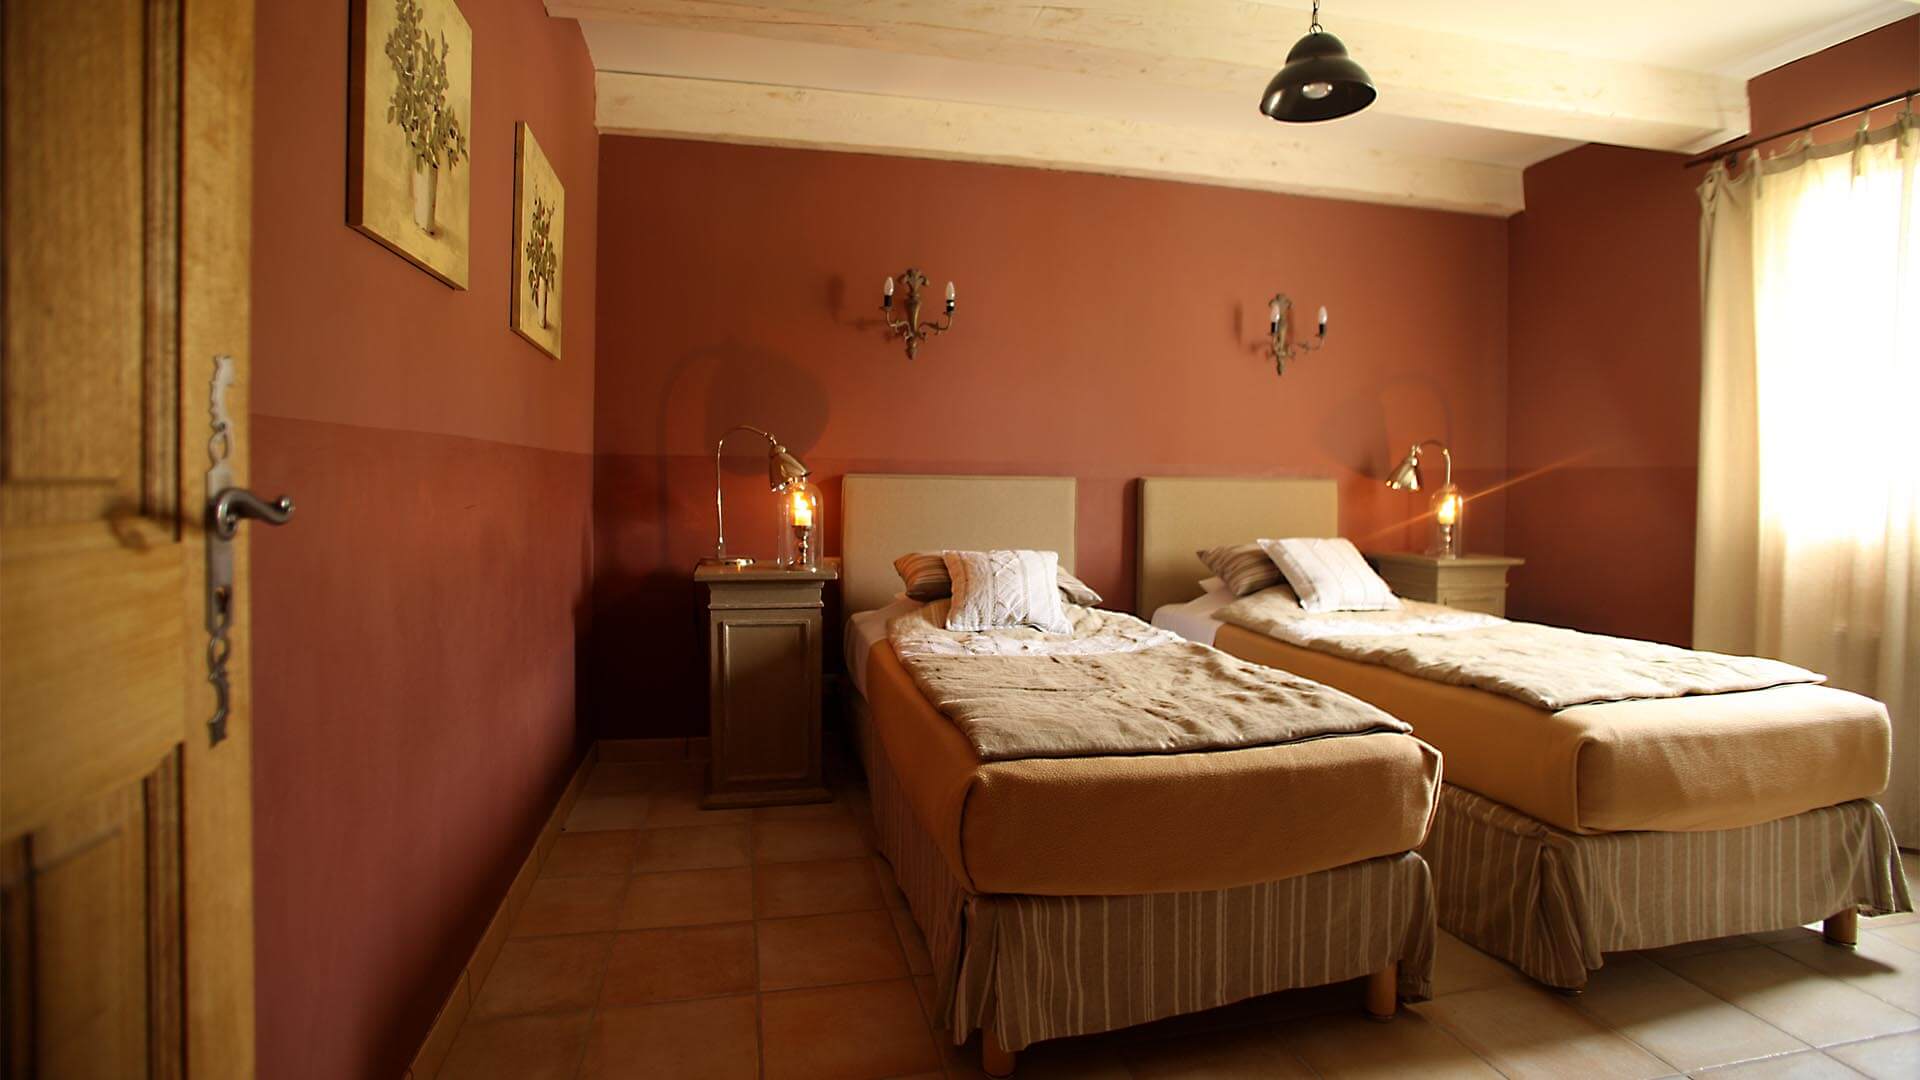 Location saisonnière Luberon | Villa la source | Chambre deux lits simples